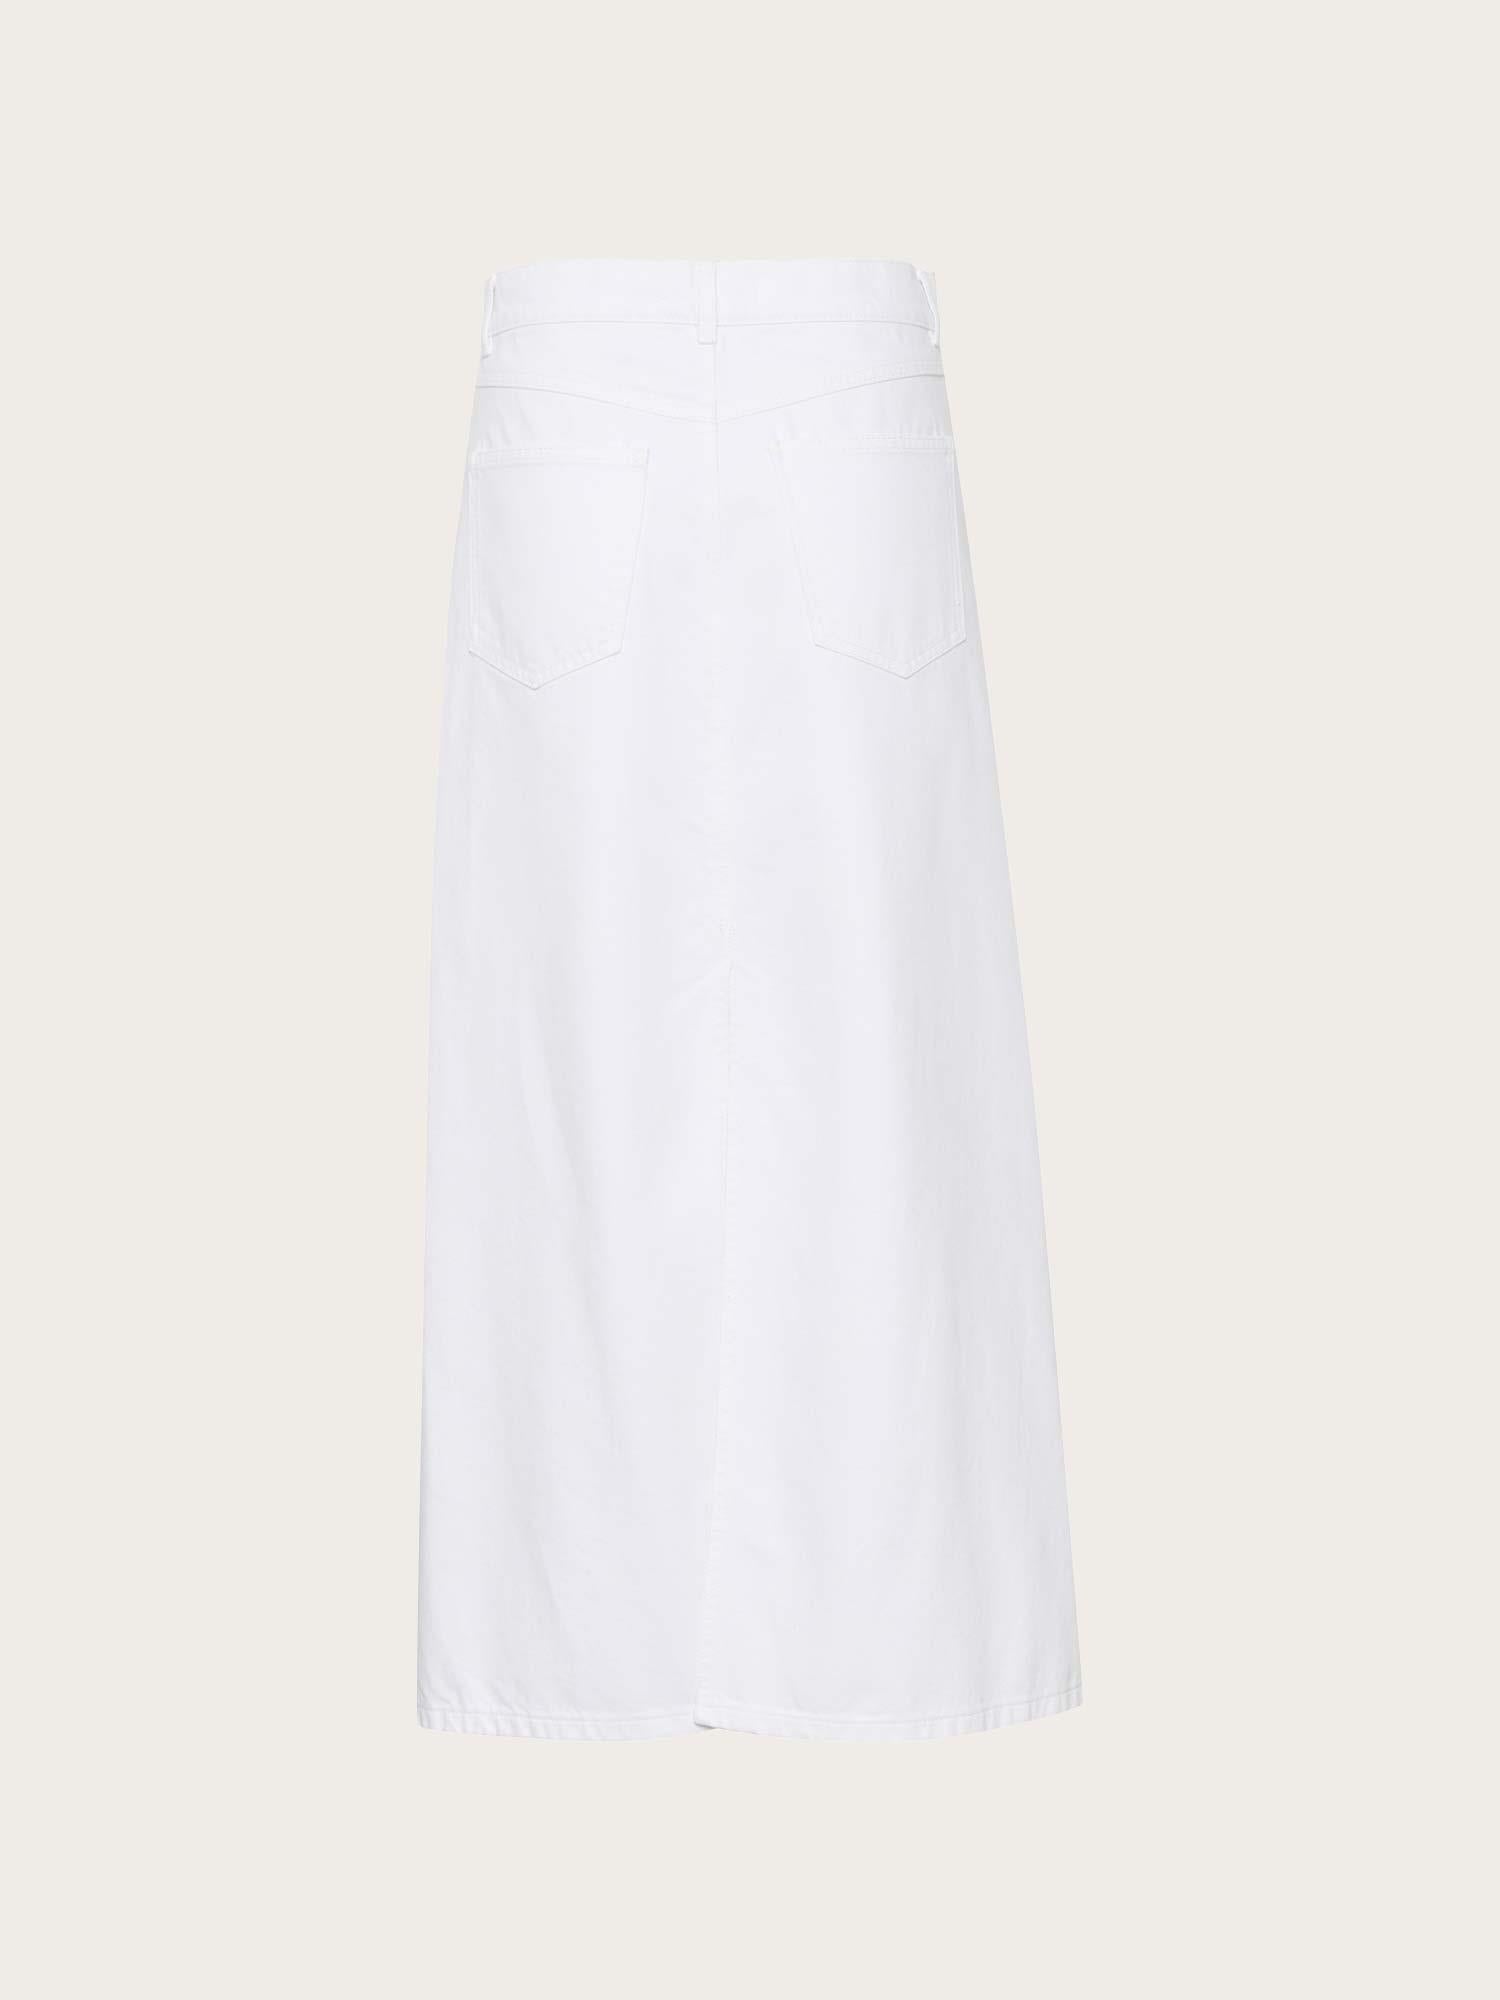 Mily hw Long Skirt - White Wash